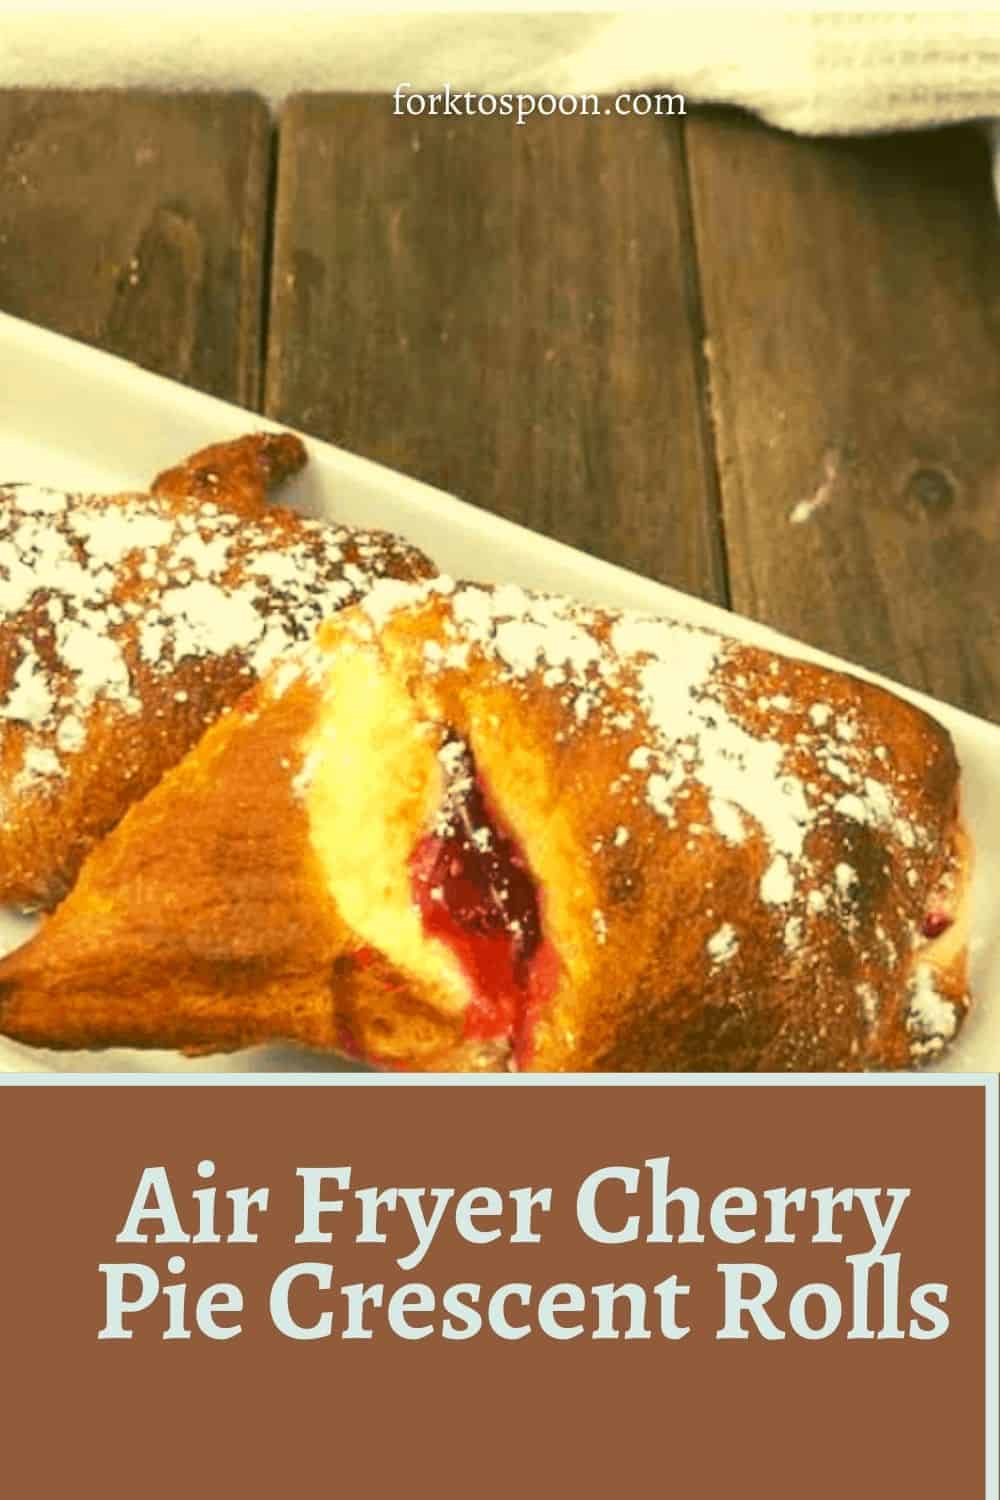 Air Fryer Cherry Pie Crescent Rolls